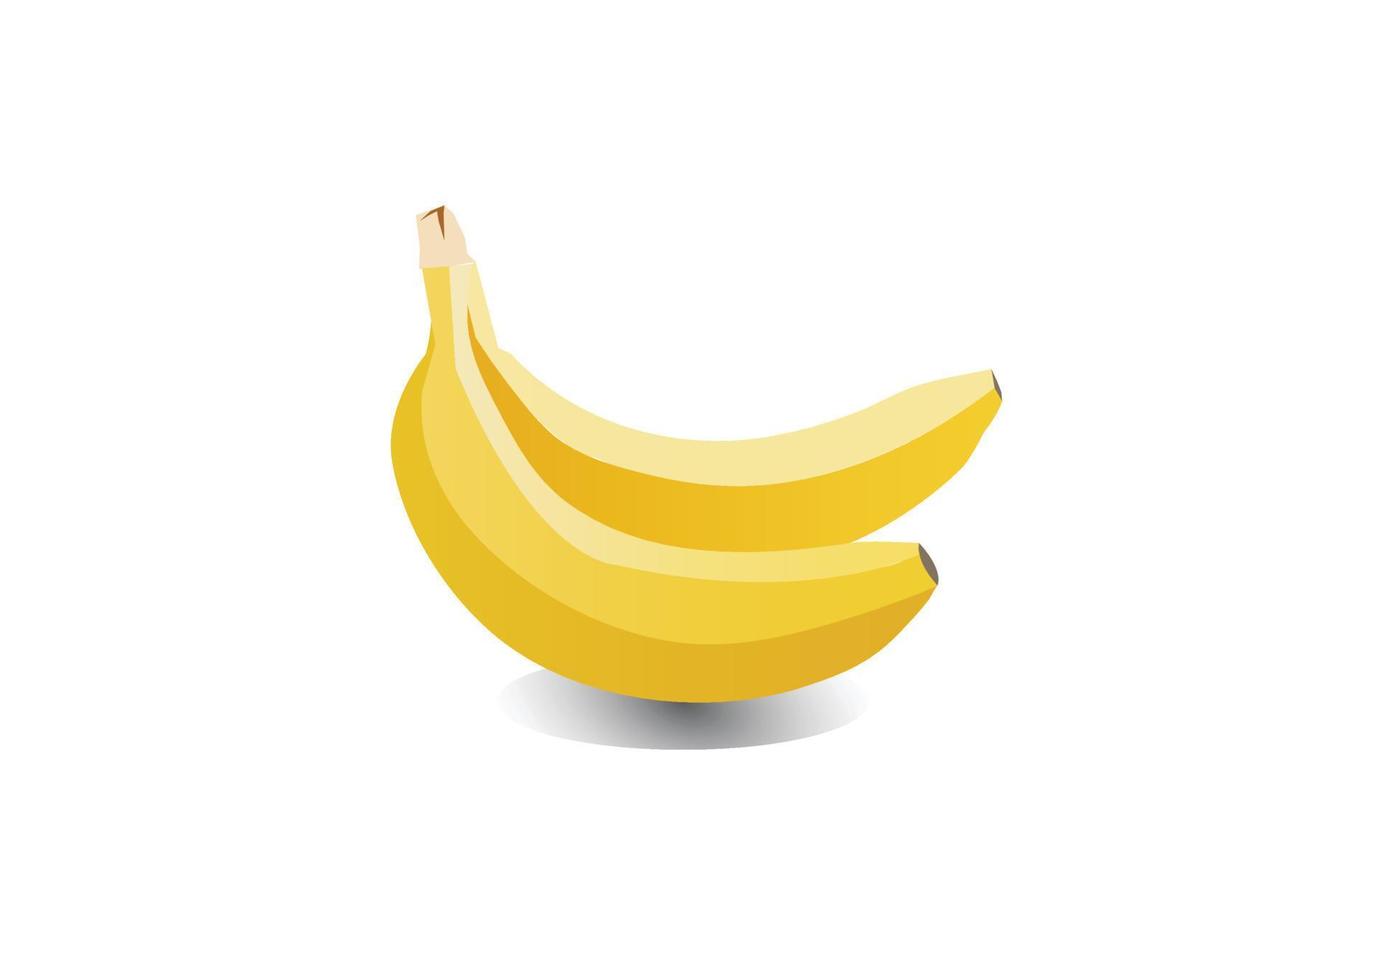 Bananenfrucht-Vektorillustration für Lebensmittel- oder Produktlogo vektor